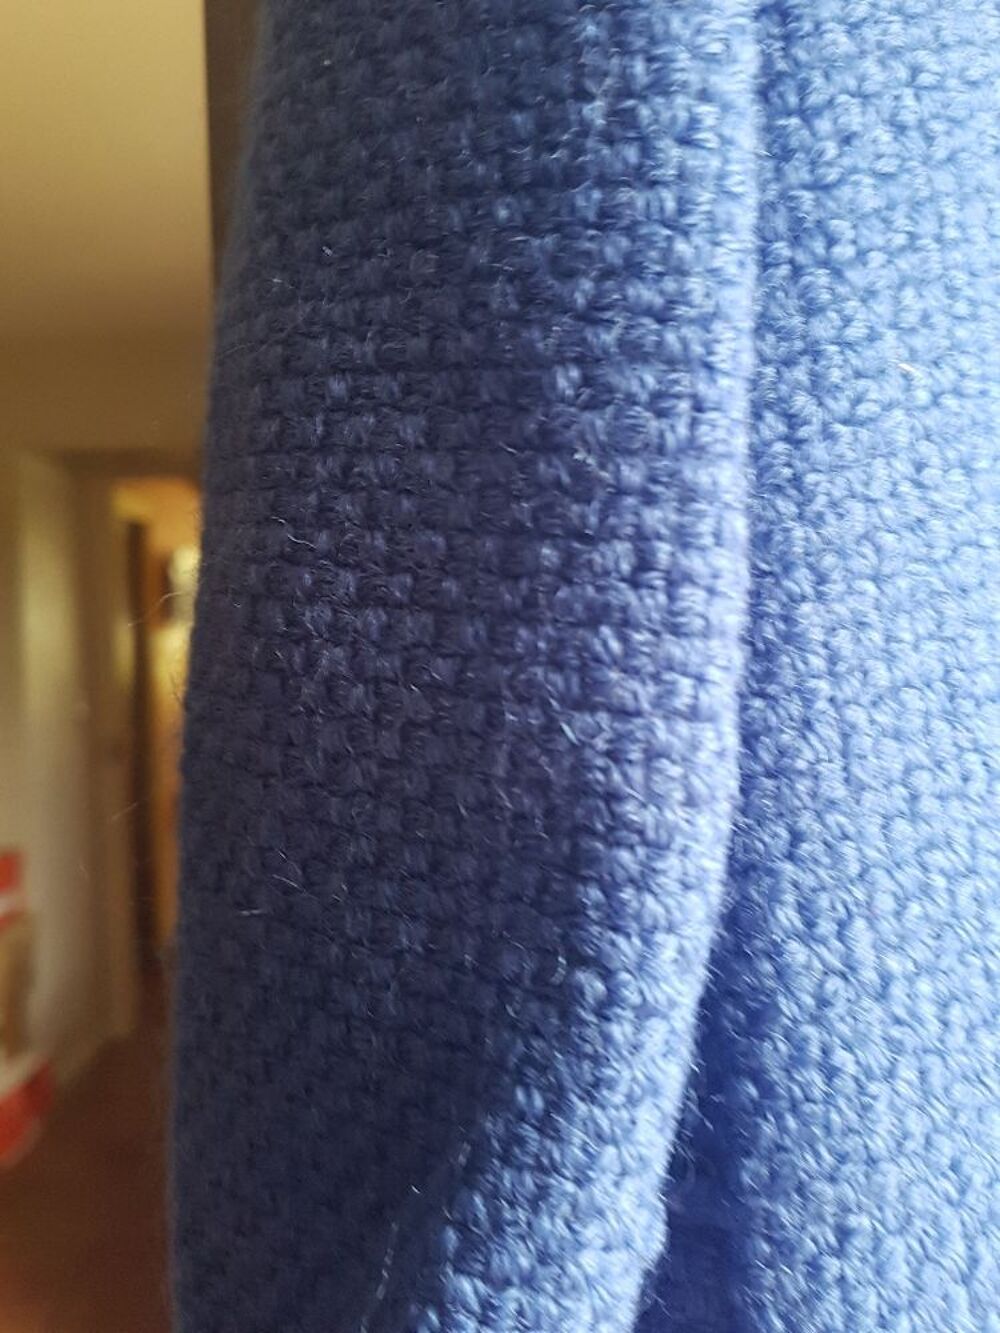 Manteau bleu en laine, doubl&eacute;, vintage
Vtements